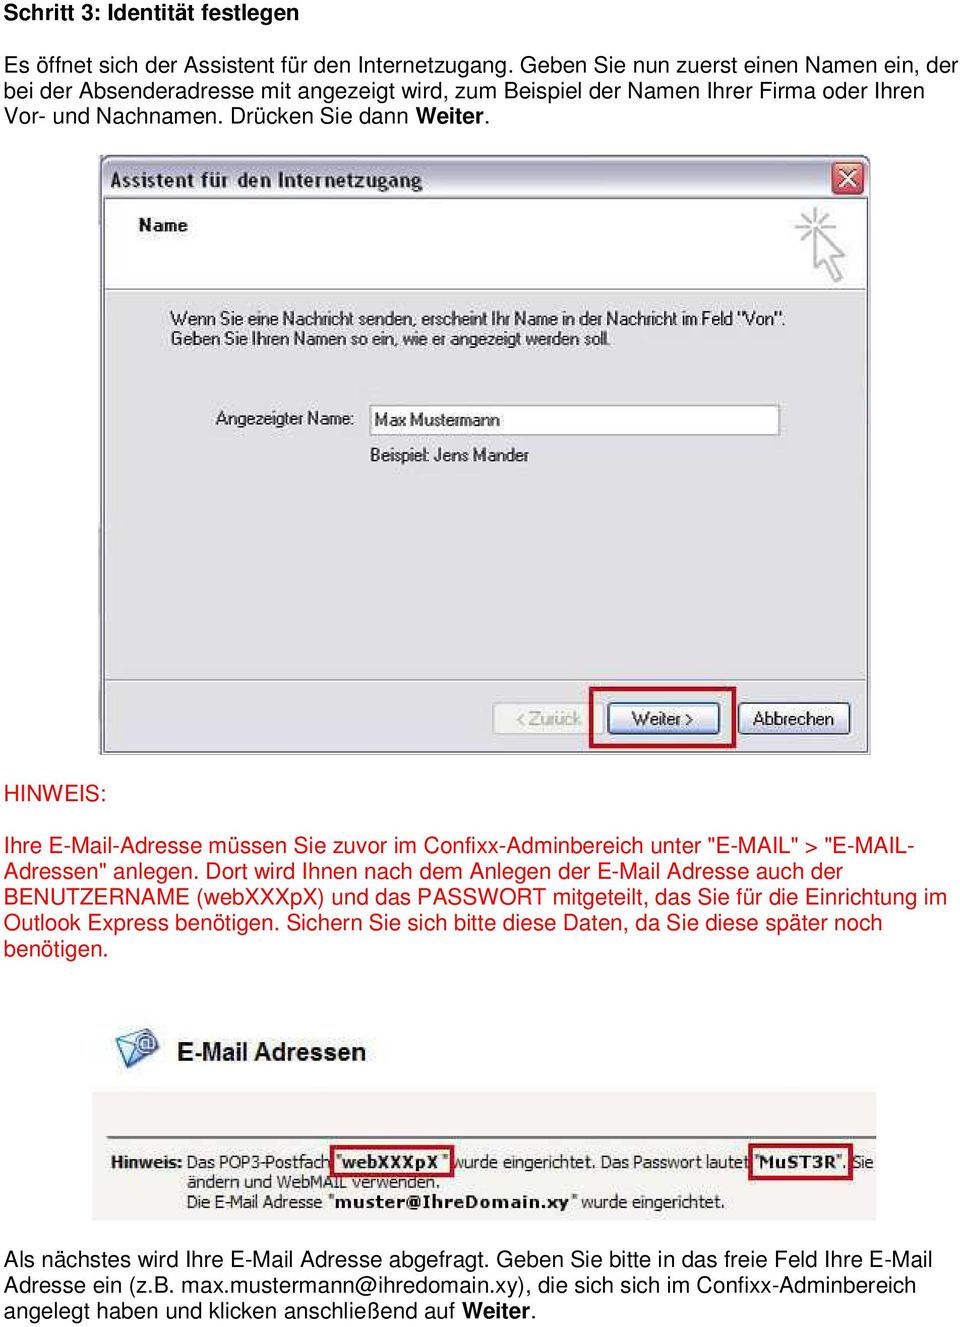 HINWEIS: Ihre E-Mail-Adresse müssen Sie zuvor im Confixx-Adminbereich unter "E-MAIL" > "E-MAIL- Adressen" anlegen.